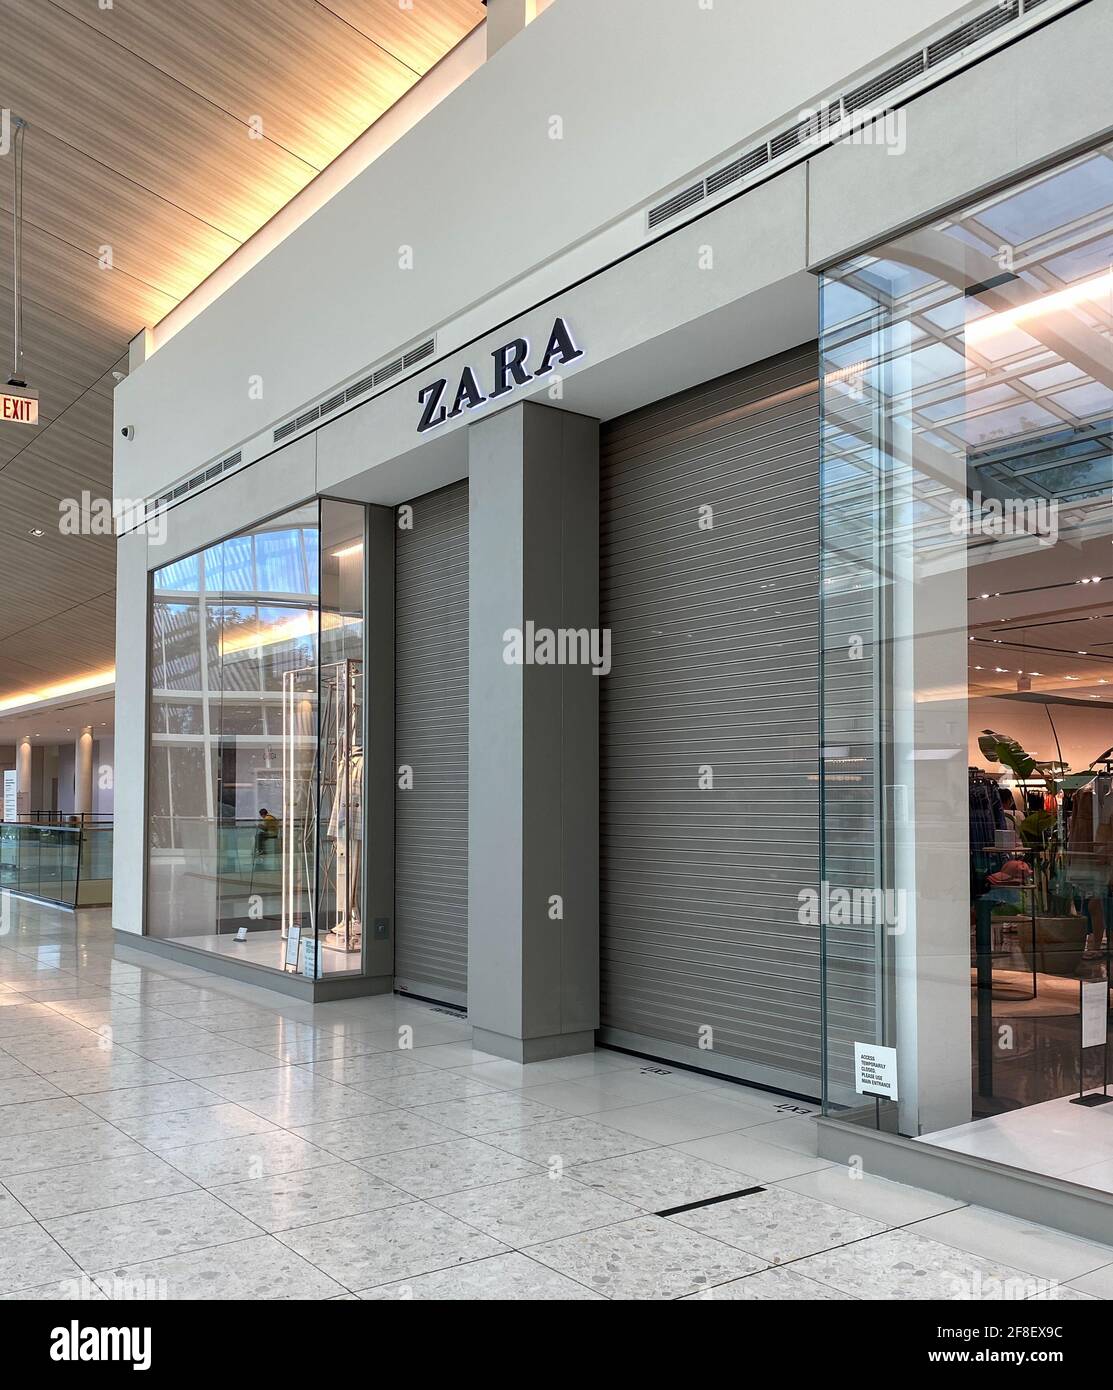 Das Modegeschäft Zara in der Aventura Mall ist aufgrund von COVID-19-Pandemievorkehrungen geschlossen. Zara ist ein spanischer Bekleidungshändler. Stockfoto